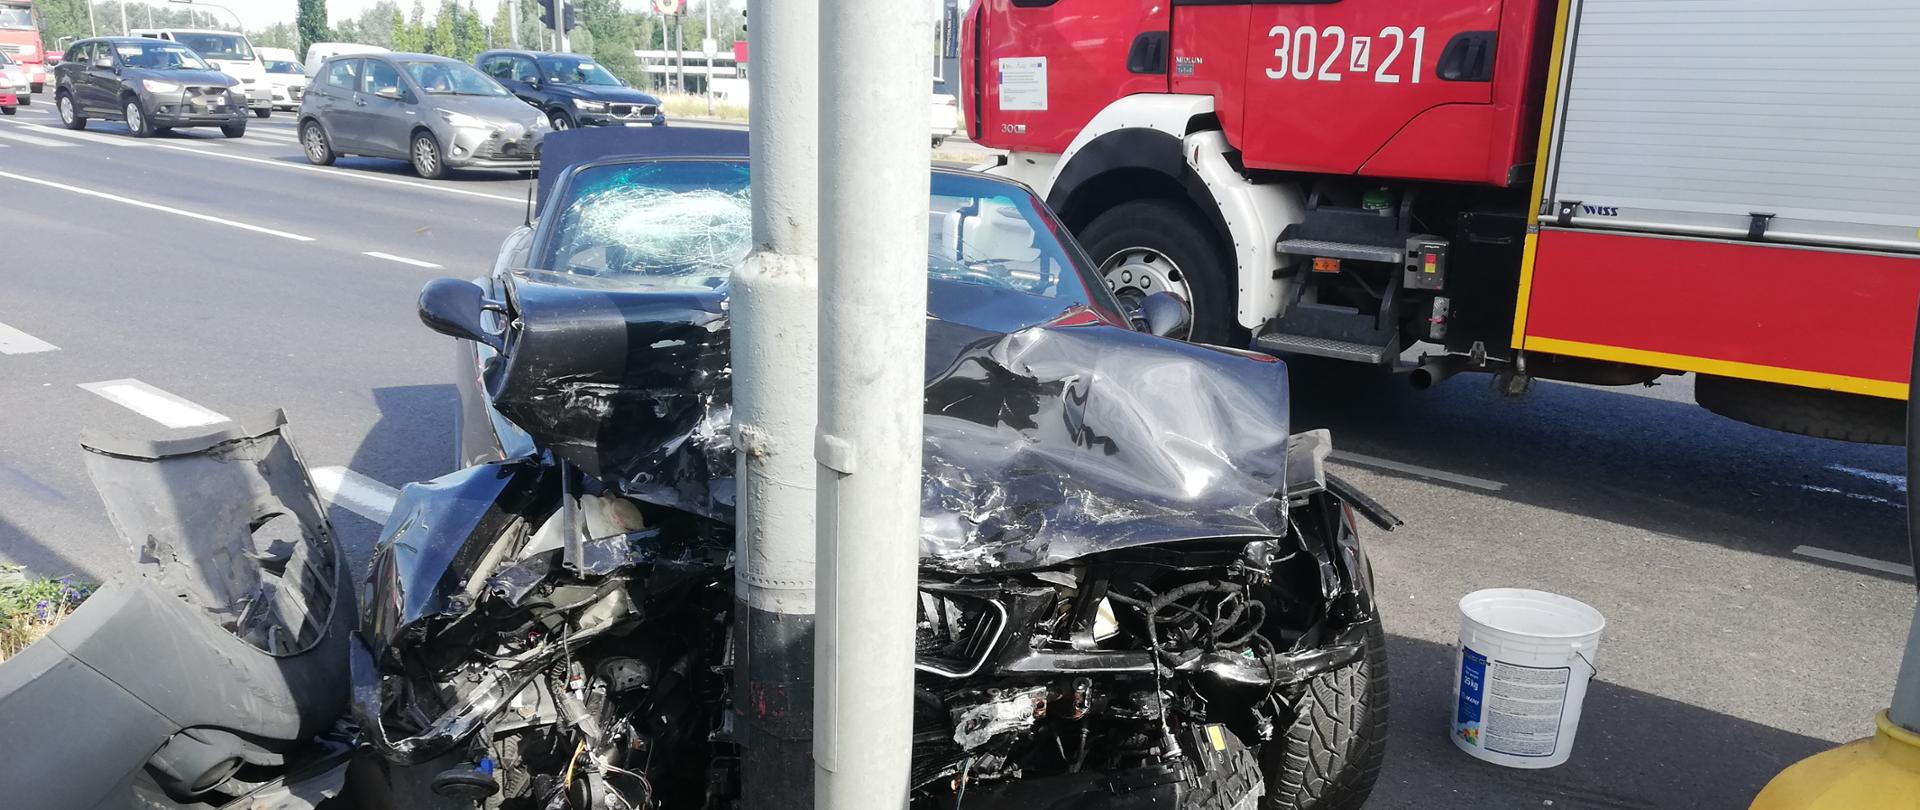 Wypadek na skrzyżowaniu ulicy Gryfińskiej i Hangarowej